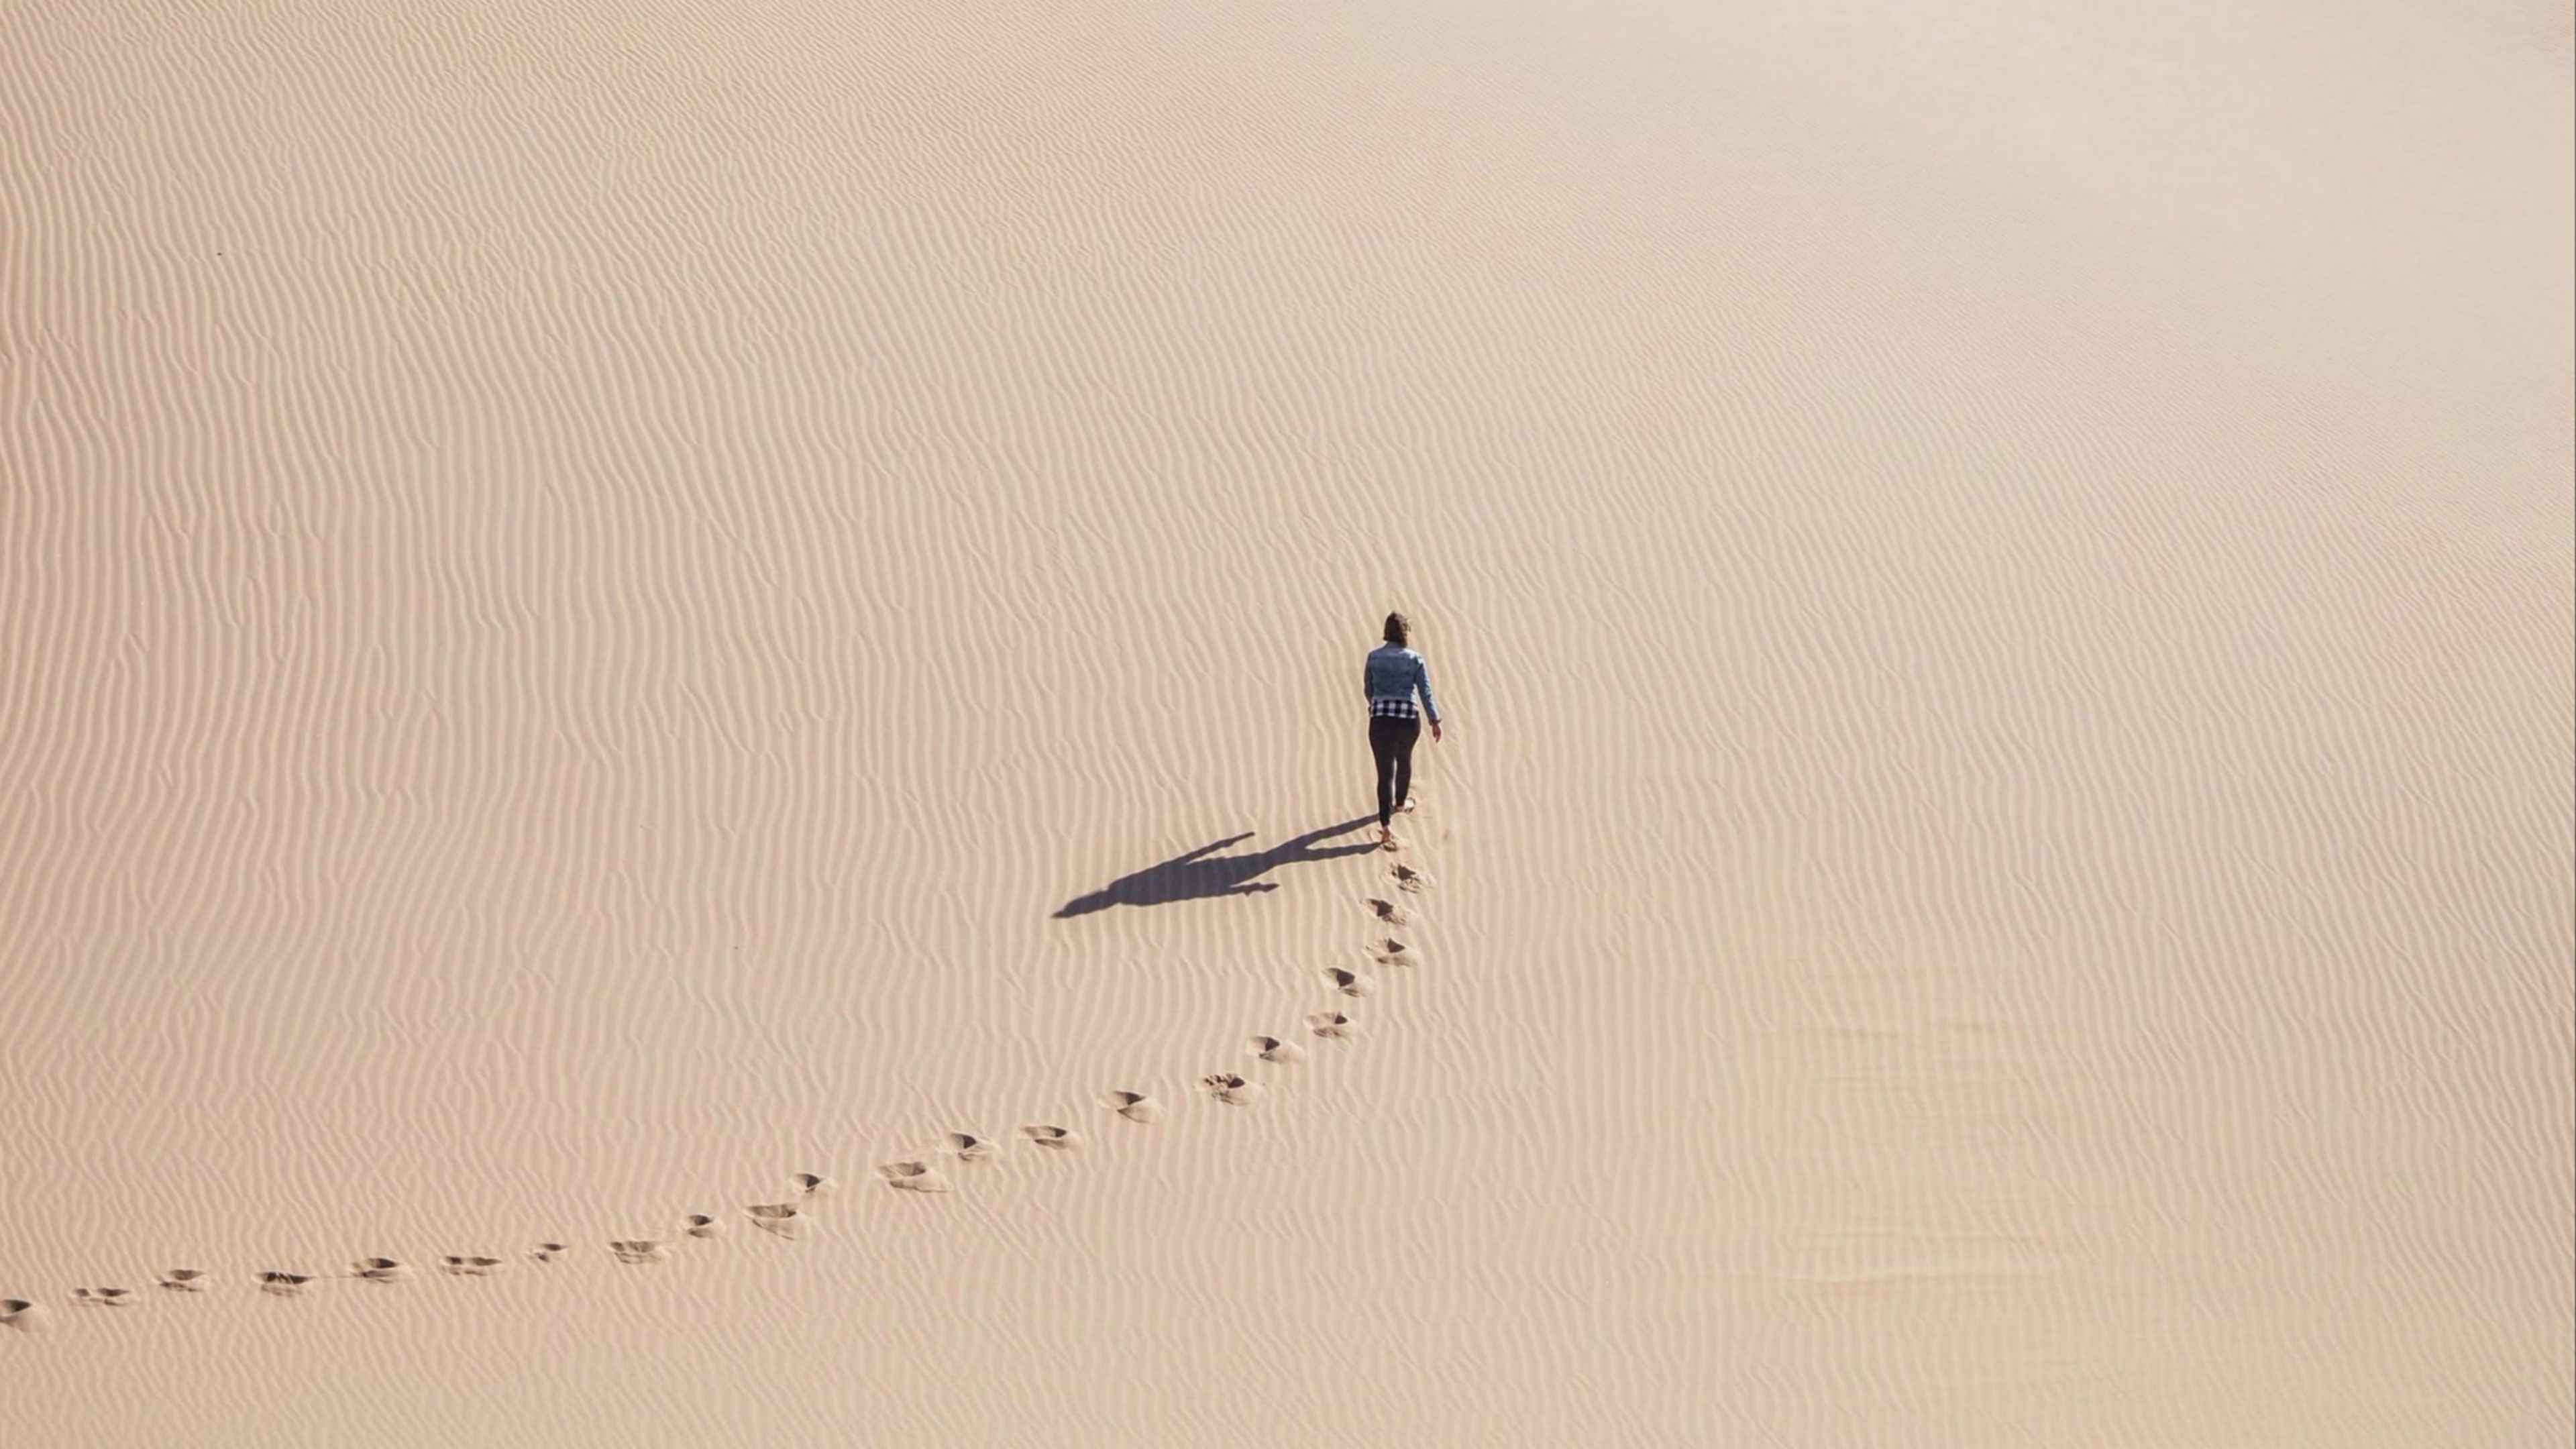 Their distance. Следы на песке в пустыне. Следы в пустыне. Идущие по пустыне. Человек идет по пустыне.